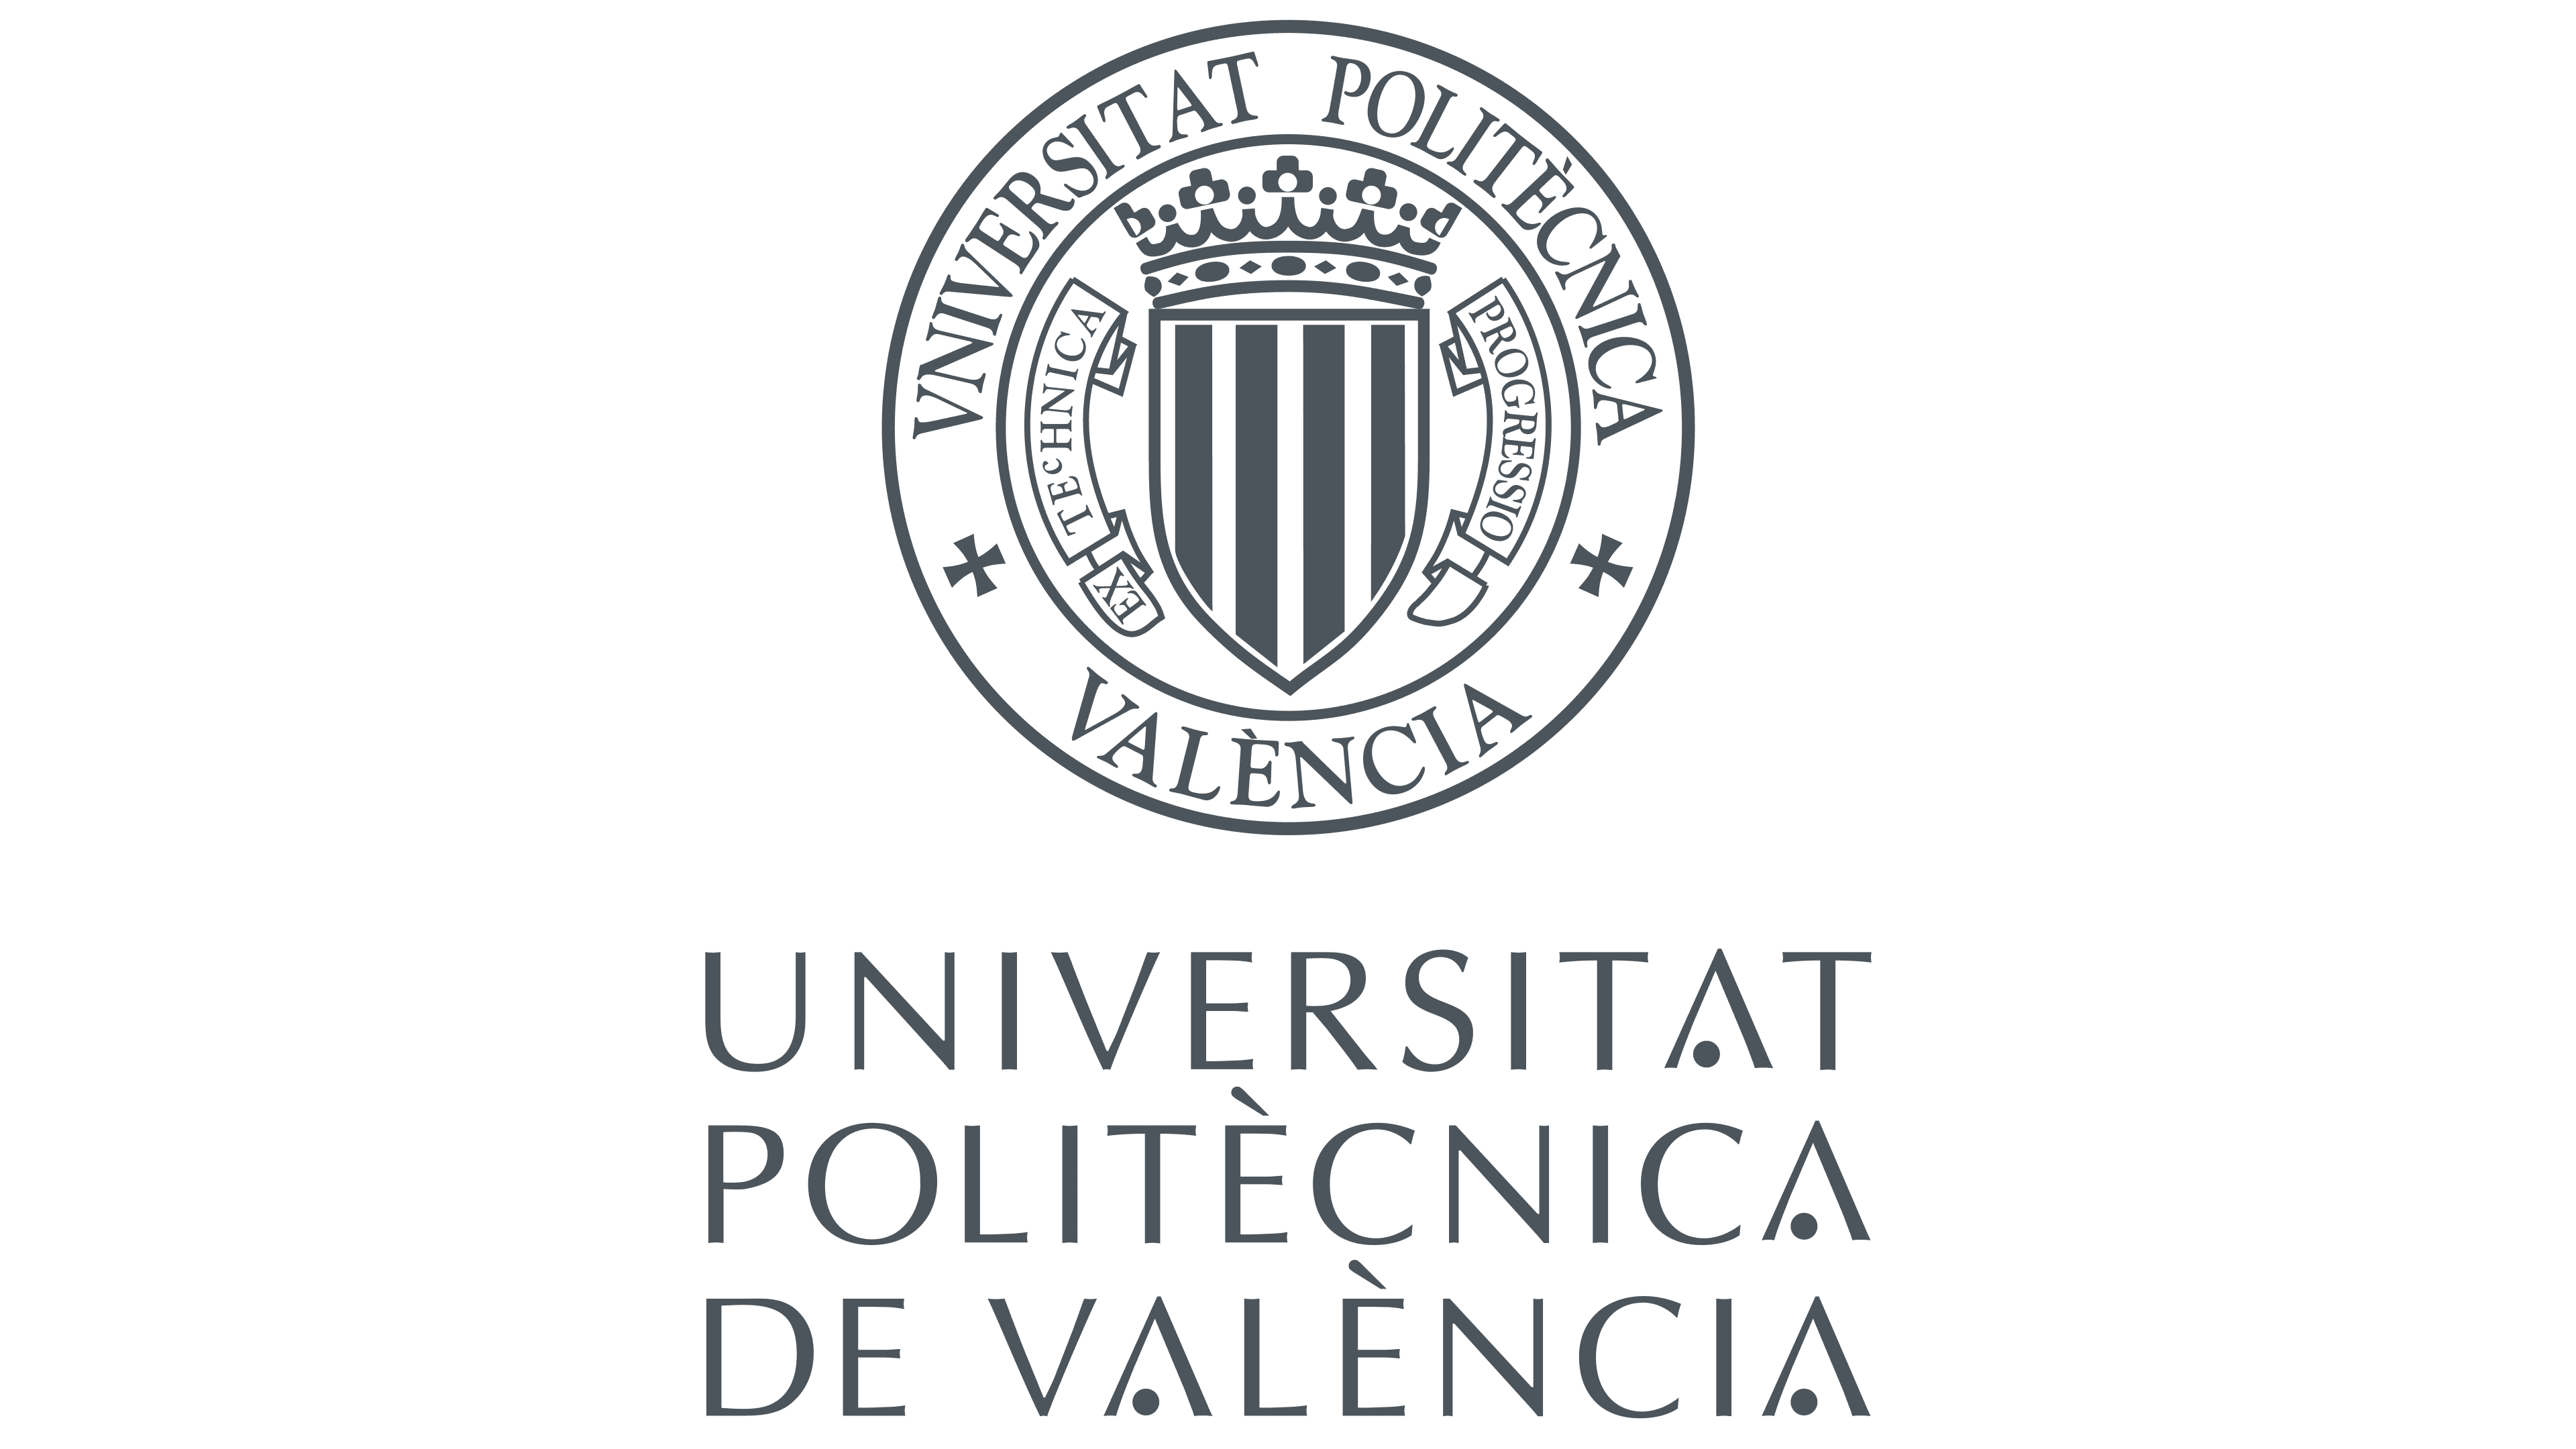 Университет валенсии. Университет Валенсии Испания. Политехнический университет Валенсии. Политехнический университет Валенсии Испания. Valencia Polytechnic University logo.